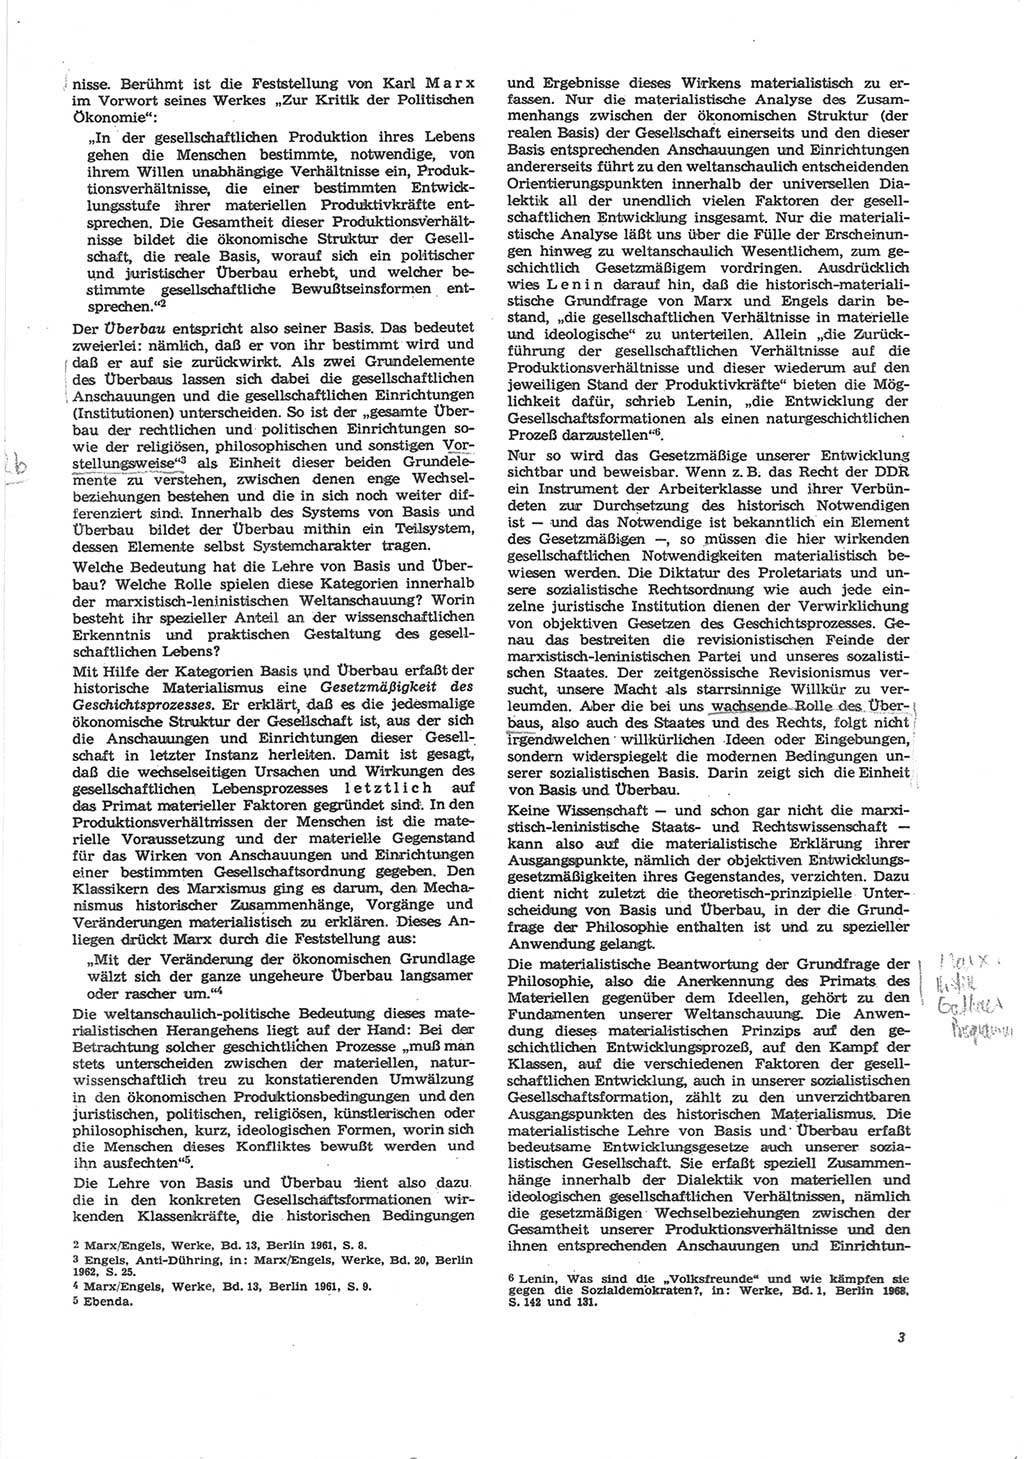 Neue Justiz (NJ), Zeitschrift für Recht und Rechtswissenschaft [Deutsche Demokratische Republik (DDR)], 24. Jahrgang 1970, Seite 3 (NJ DDR 1970, S. 3)